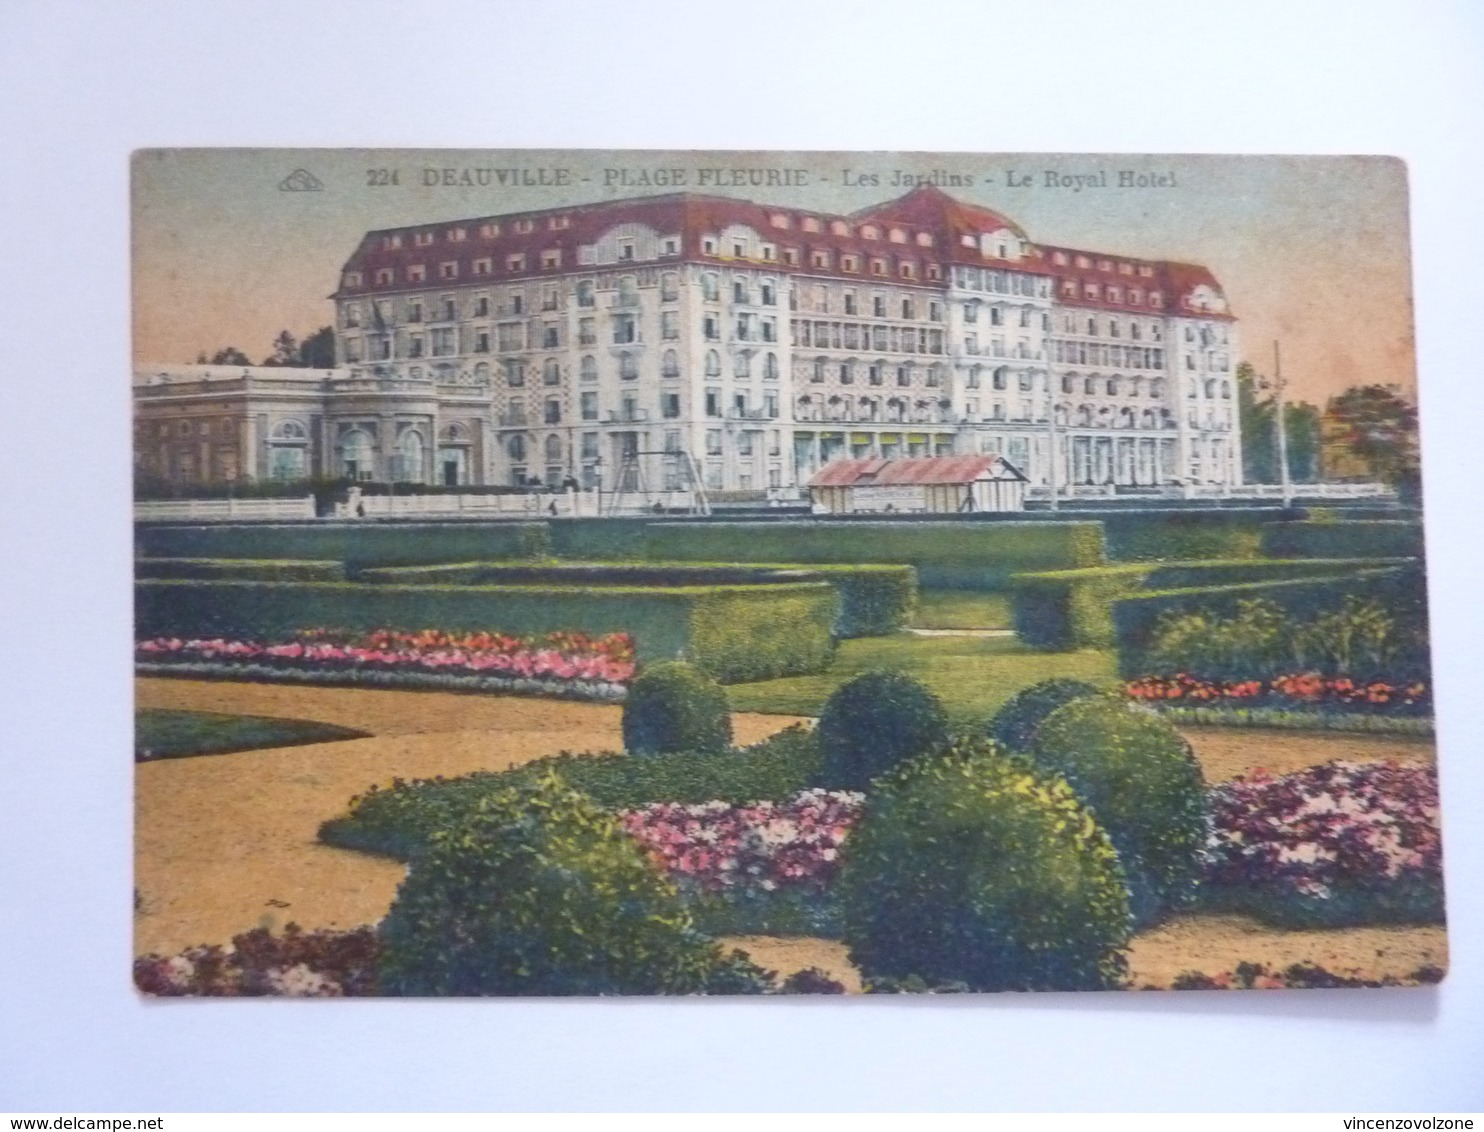 Cartolina "DEAUVILLE Plage Fleurie - Les Jardins - Le Royal Hotel" 1930 - Deauville